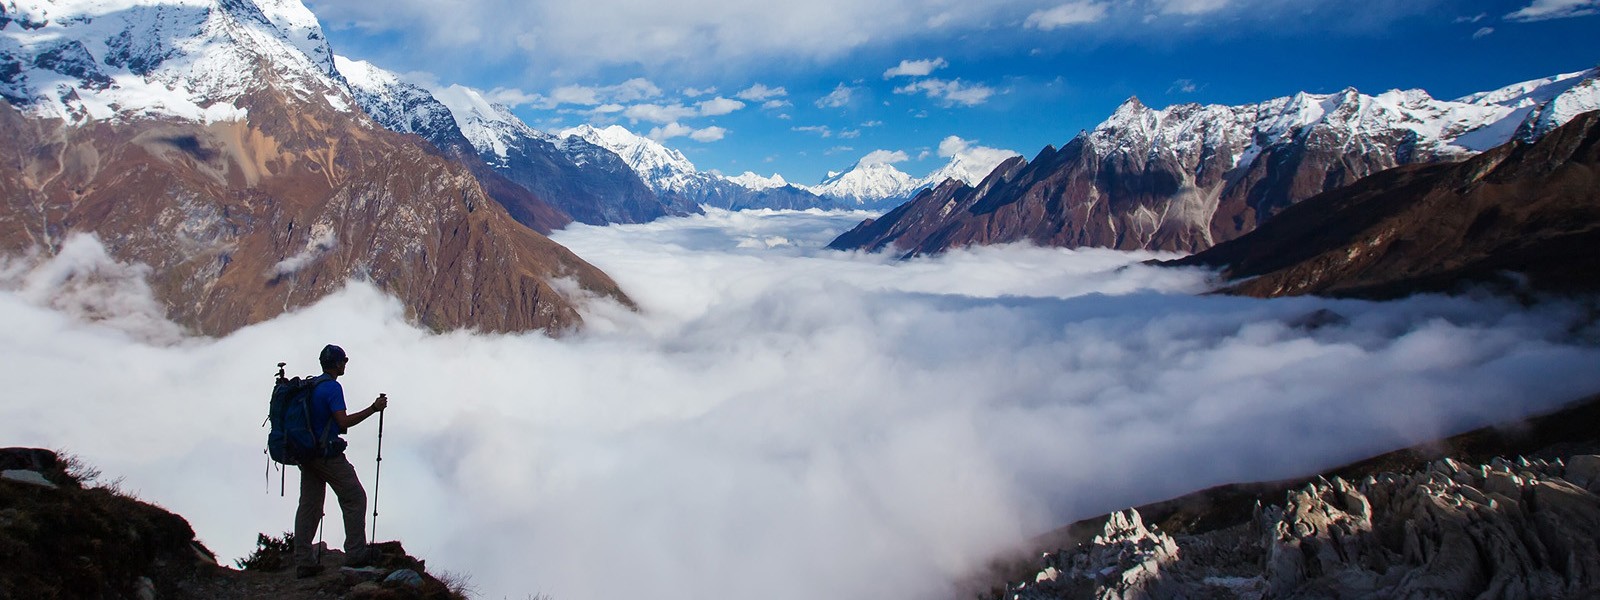 Lower Manaslu Trekking - Nepal